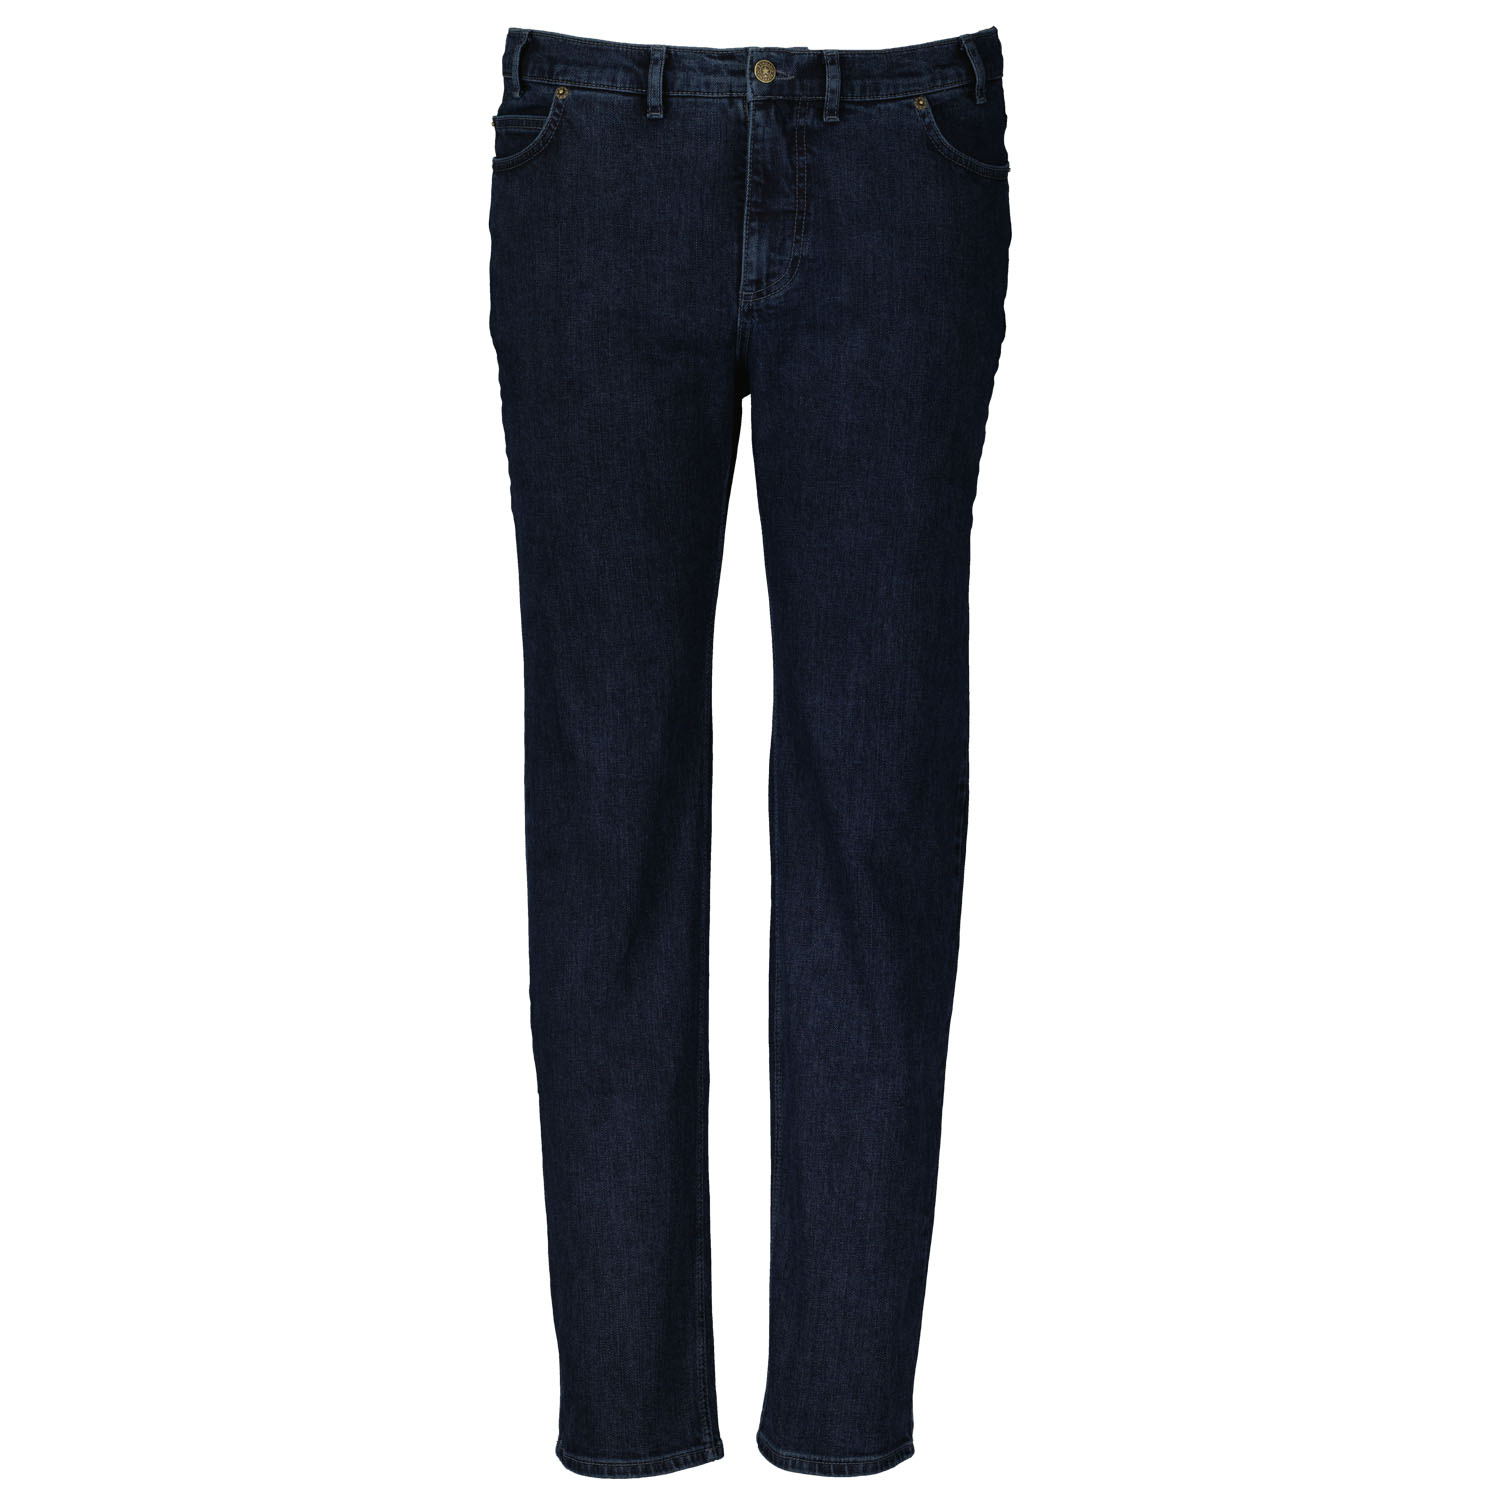 ADAMO 5-Pocket Jeans lang mit Stretch für Herren in dark navy von Adamo Serie OHIO in Übergrößen 59 - 85